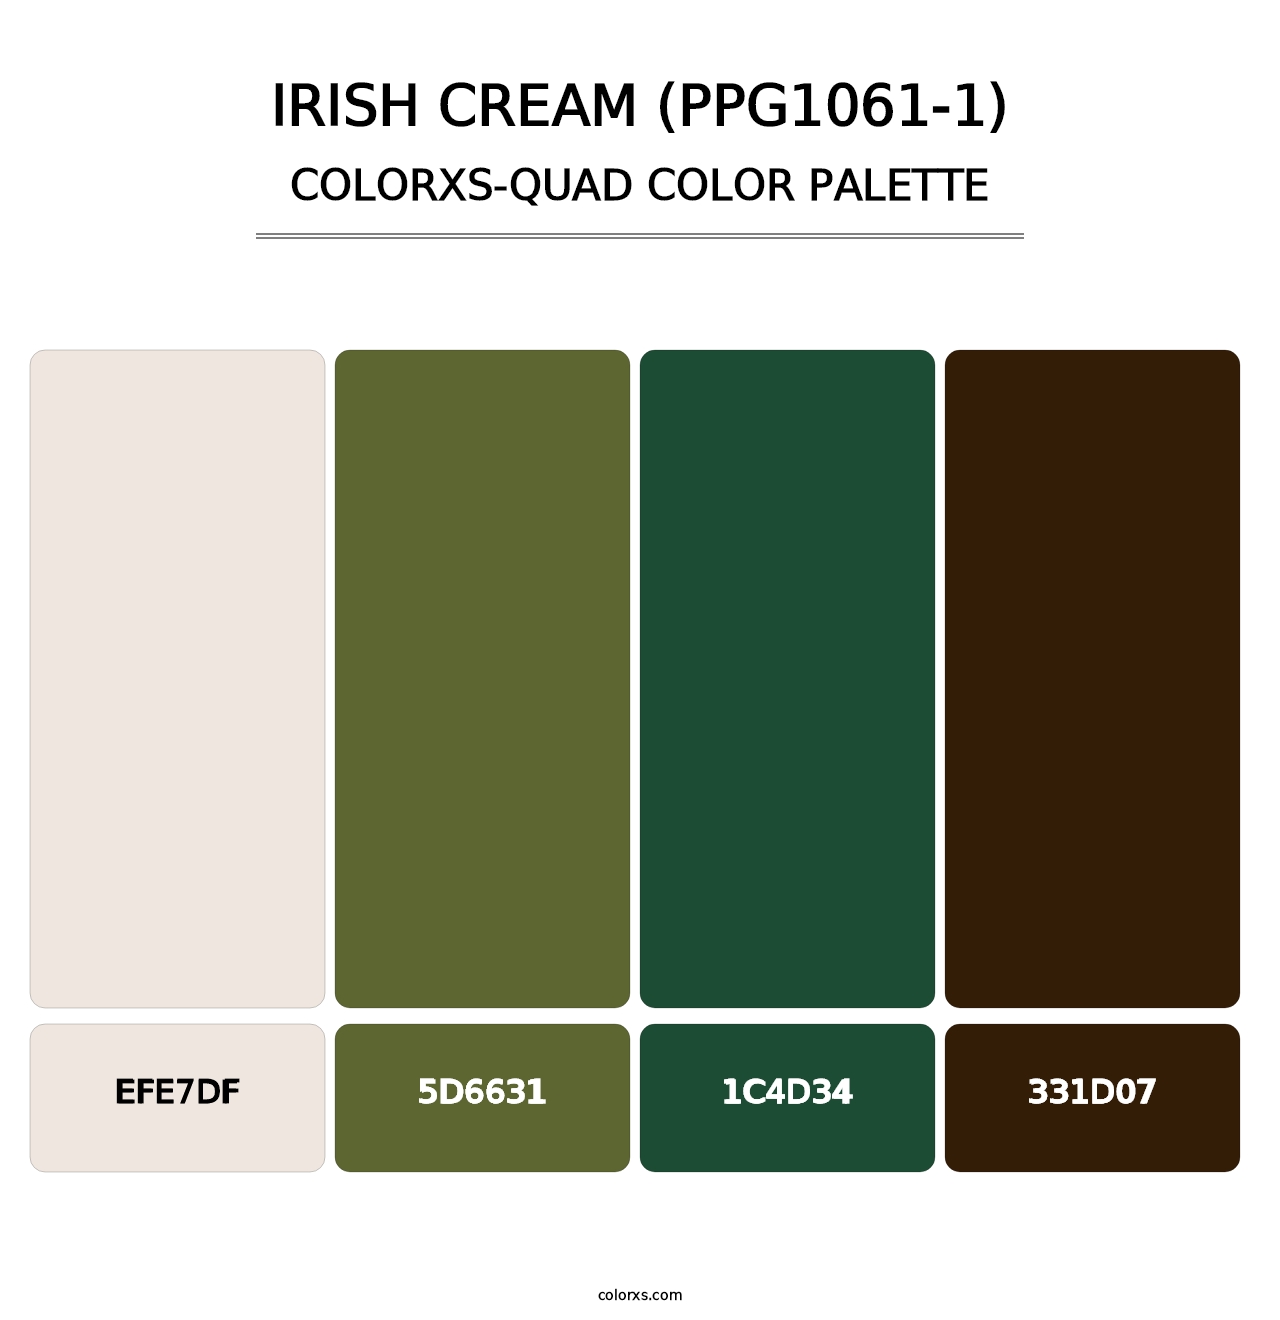 Irish Cream (PPG1061-1) - Colorxs Quad Palette